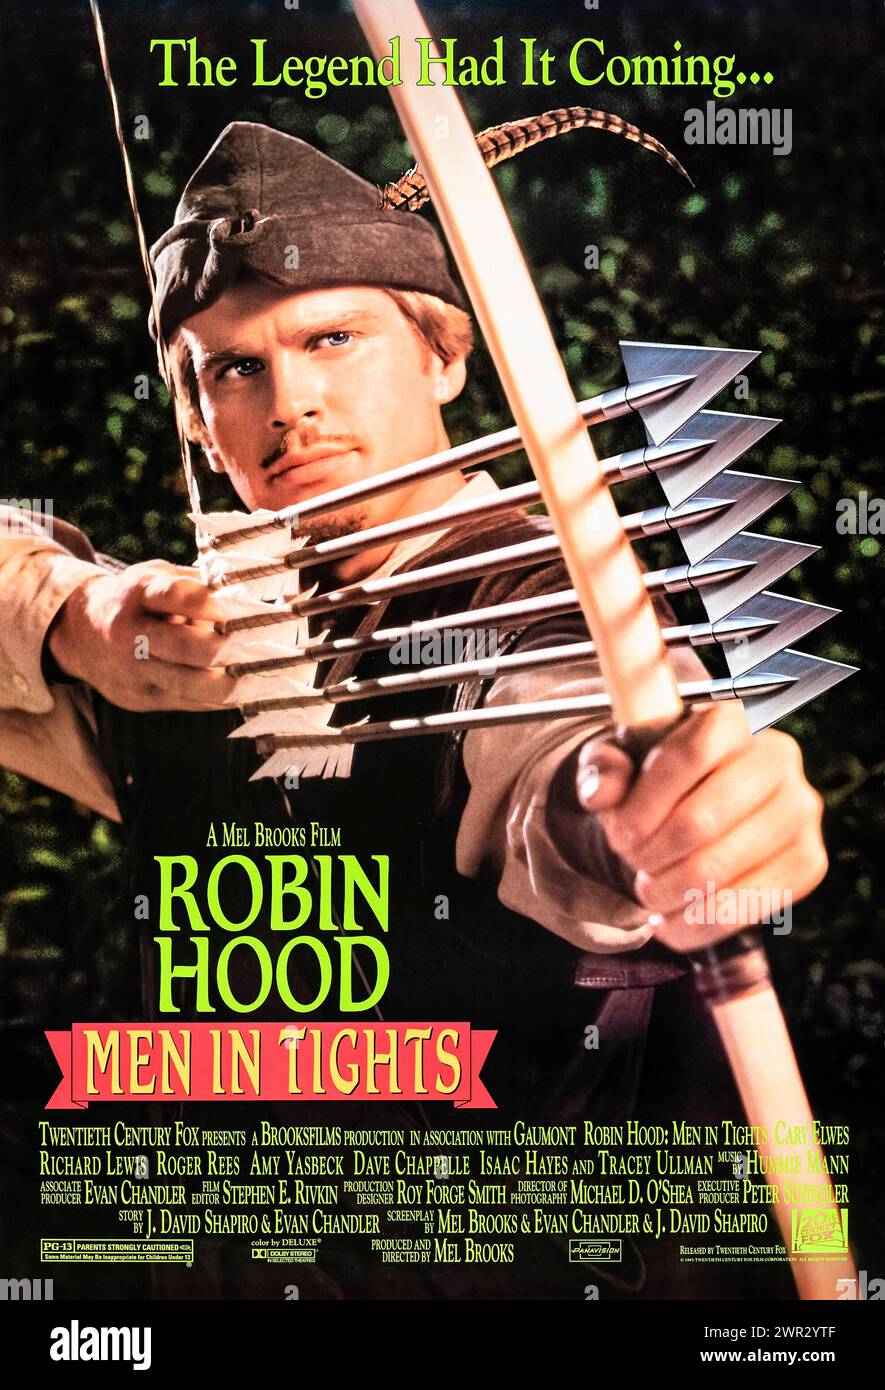 Robin Hood: Men in Tights (1993) diretto da Mel Brooks e interpretato da Cary Elwes, Richard Lewis e Roger Rees. Una parodia della leggenda di Robin Hood in generale, e il film del 1991 Robin Hood: Prince of Thieves in particolare. Fotografia di un poster originale da 1993 US a un foglio. ***SOLO USO EDITORIALE*** credito: BFA / Twentieth Century Fox Foto Stock